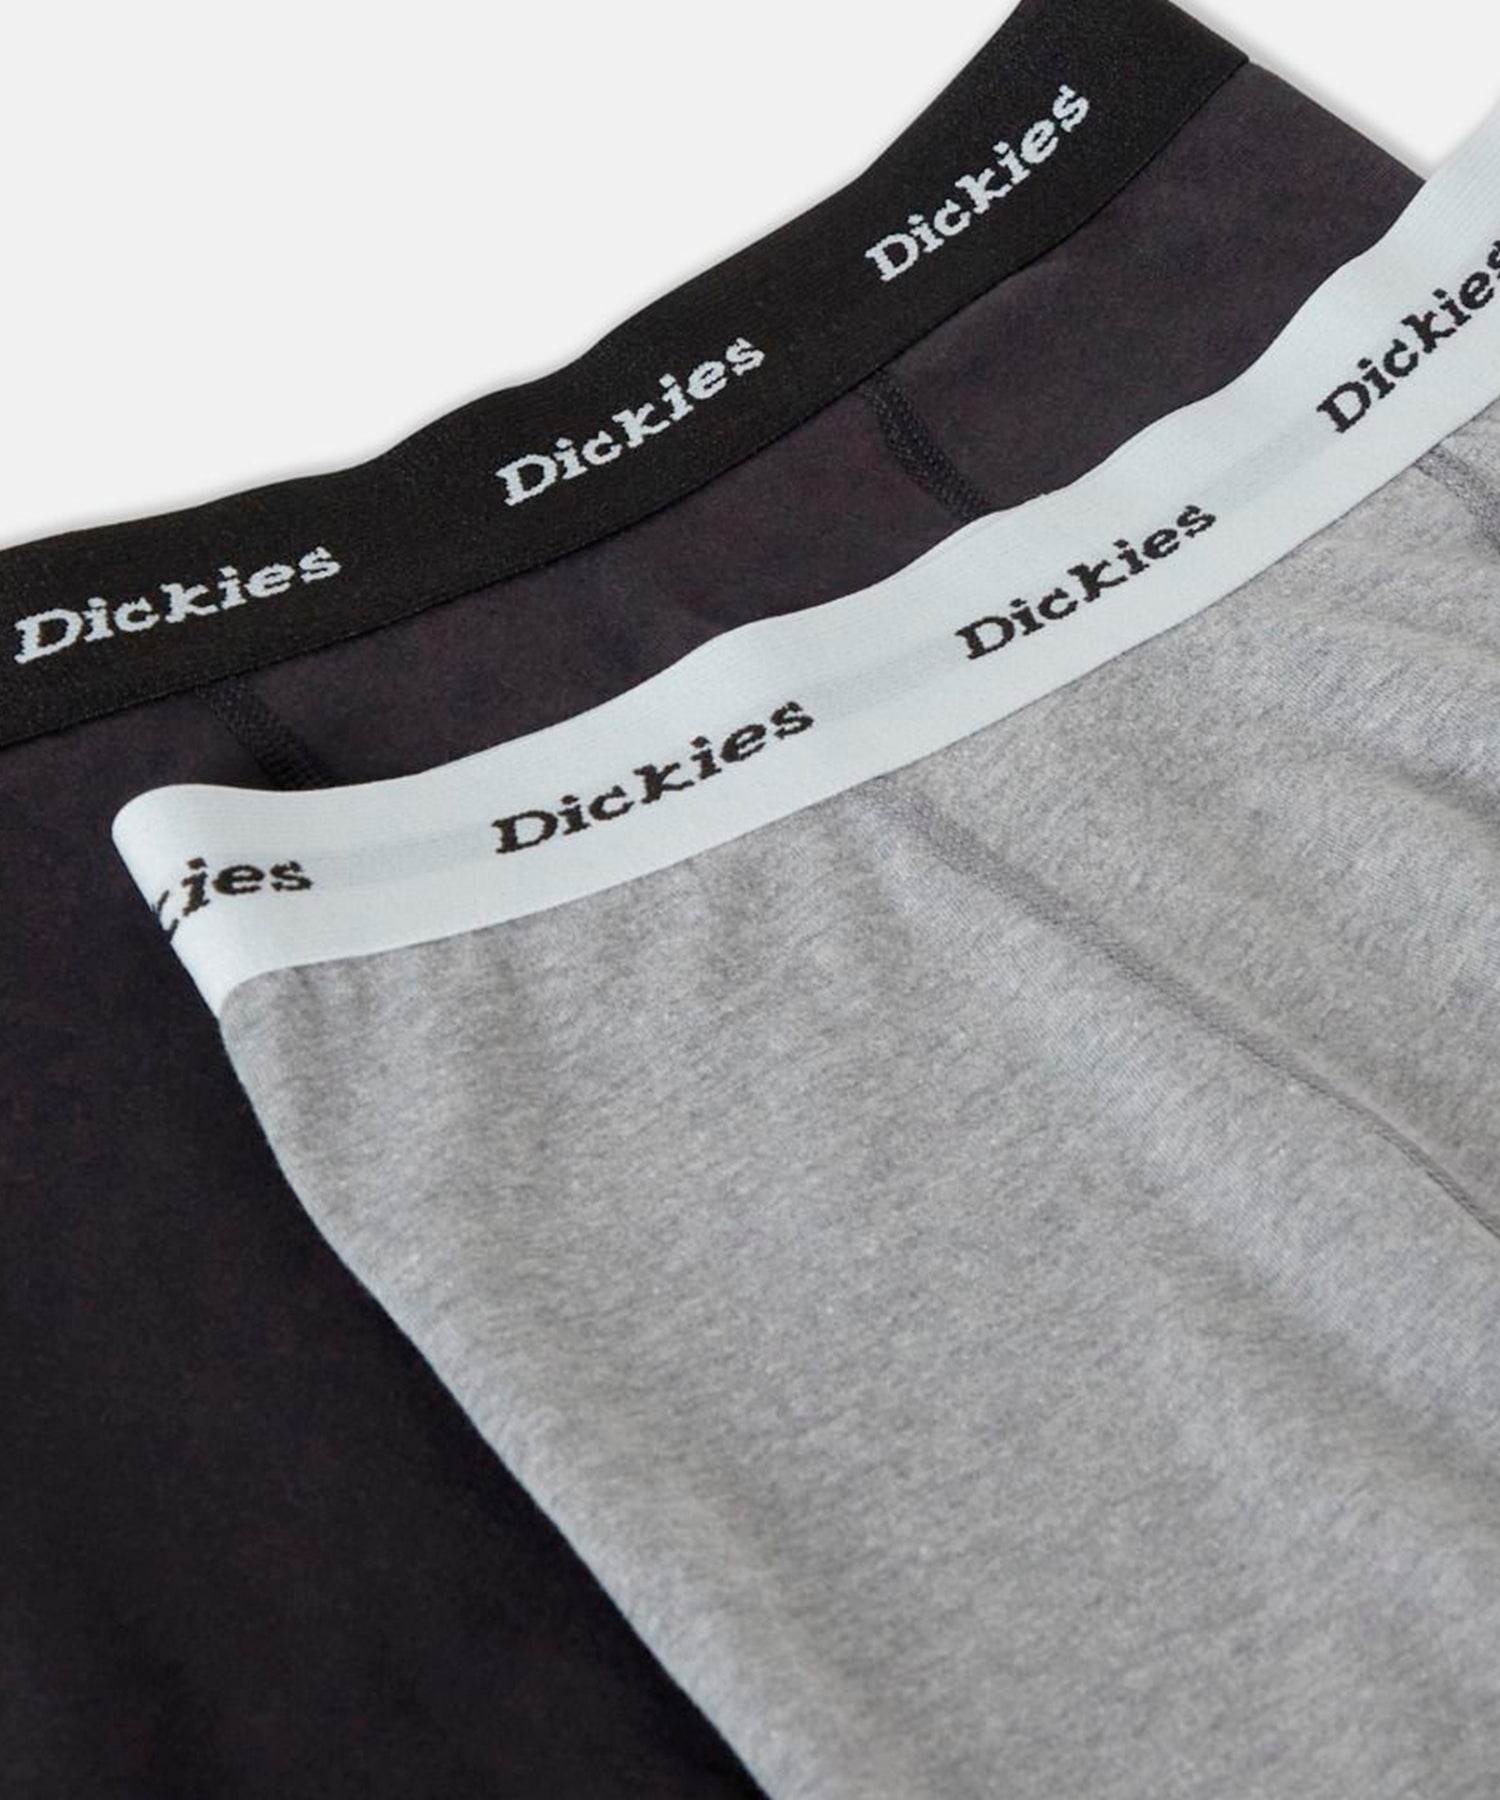 dickies-2-boxer-hombre-color-negro-y-gris-cintura-elastica-logo-dickies-suaves-y-transpirables-algodón-y-elastano